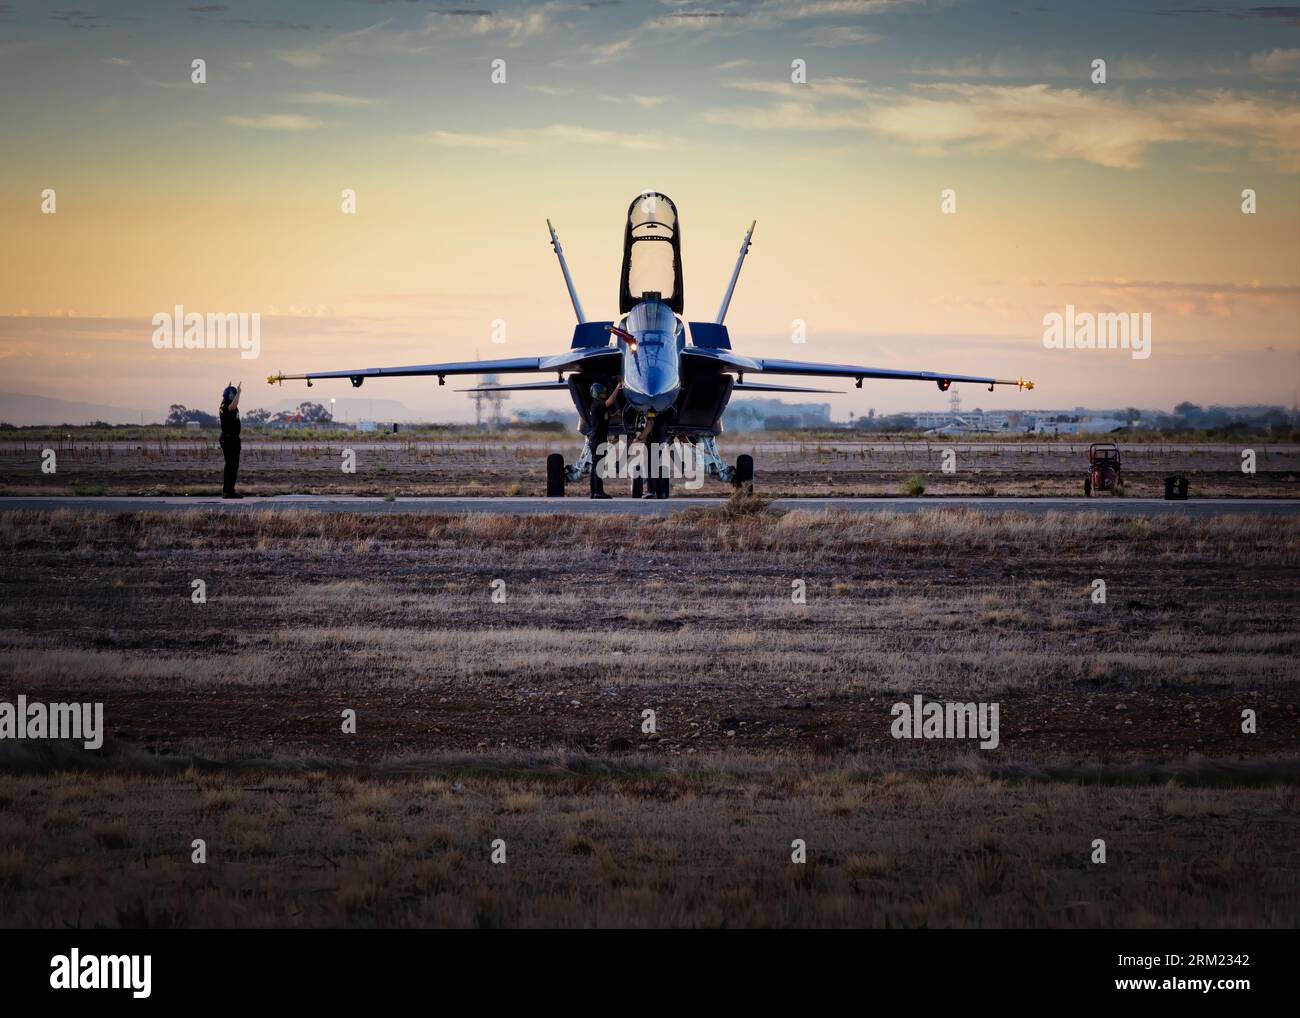 Die Blue Angels-Bodenbesatzung auf der Fluglinie bei Sonnenaufgang, um sicherzustellen, dass das Flugzeug für die Miramar Airshow 2022 bereit ist. Stockfoto